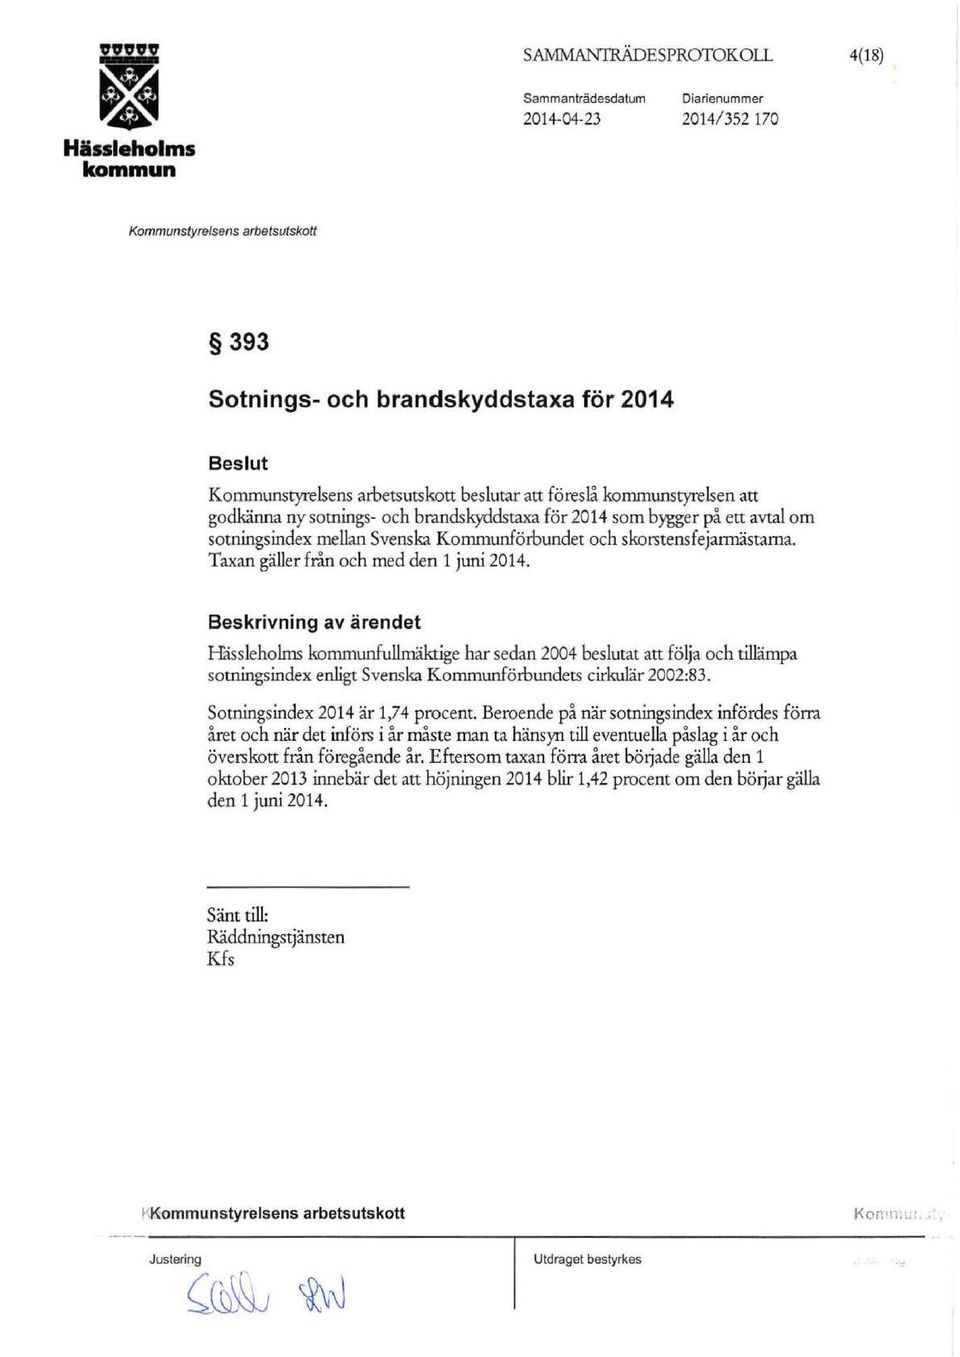 Beskrivning av ärendet Håssieholms fullmäktige har sedan 2004 beslutat att följa och tillämpa sotningsindex enligt Svenska Kommunförbundets cirkulär 2002:83. Sotningsindex 2014 är 1,74 procent.